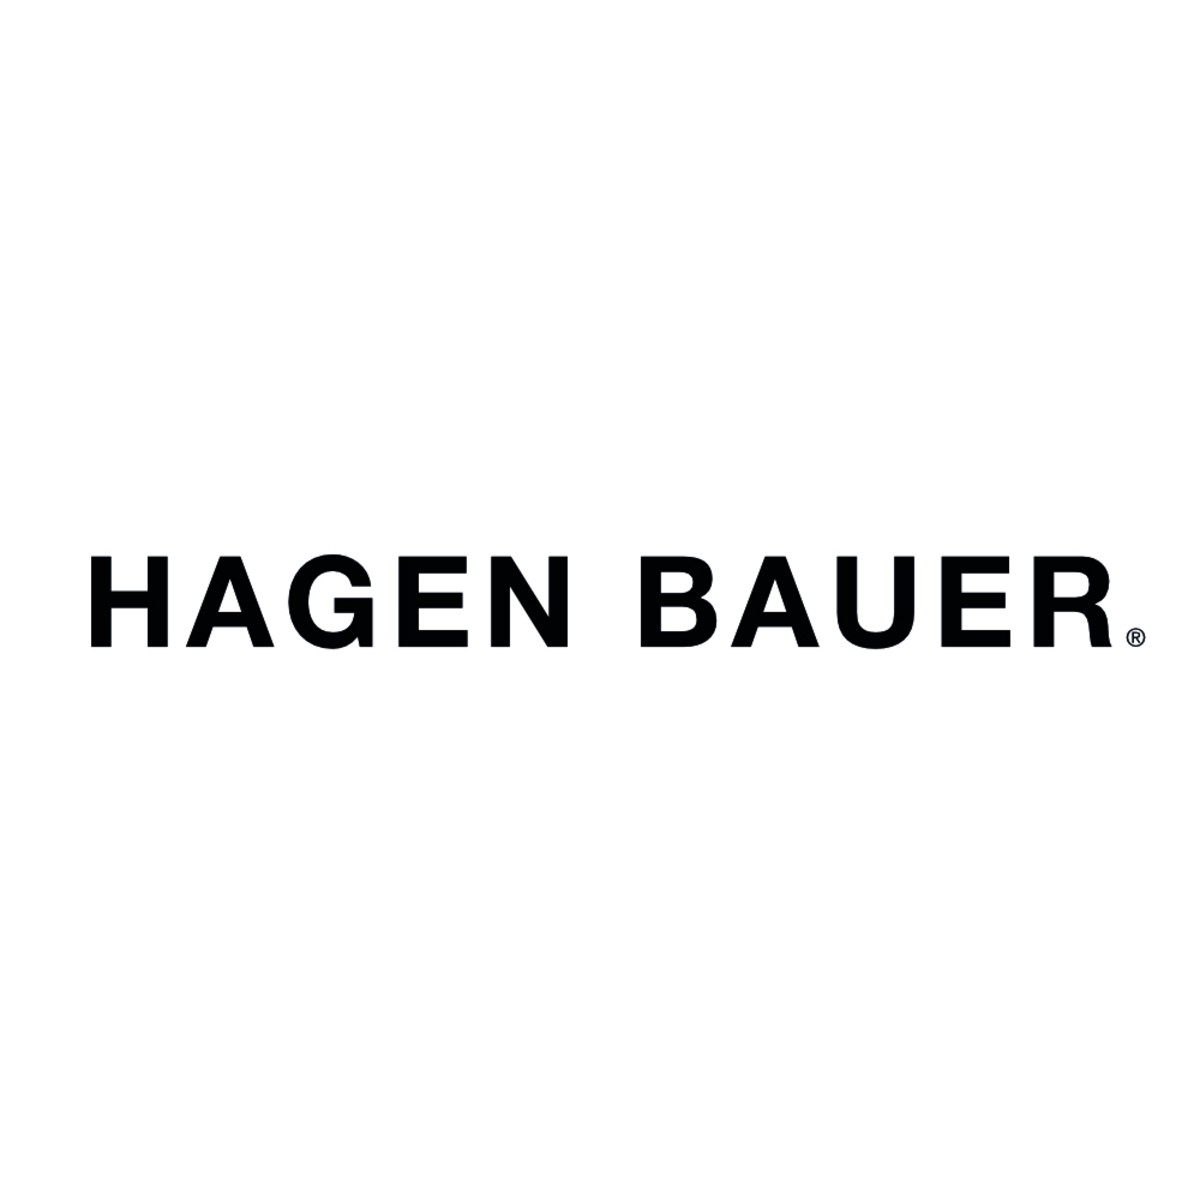 HAGEN BAUER